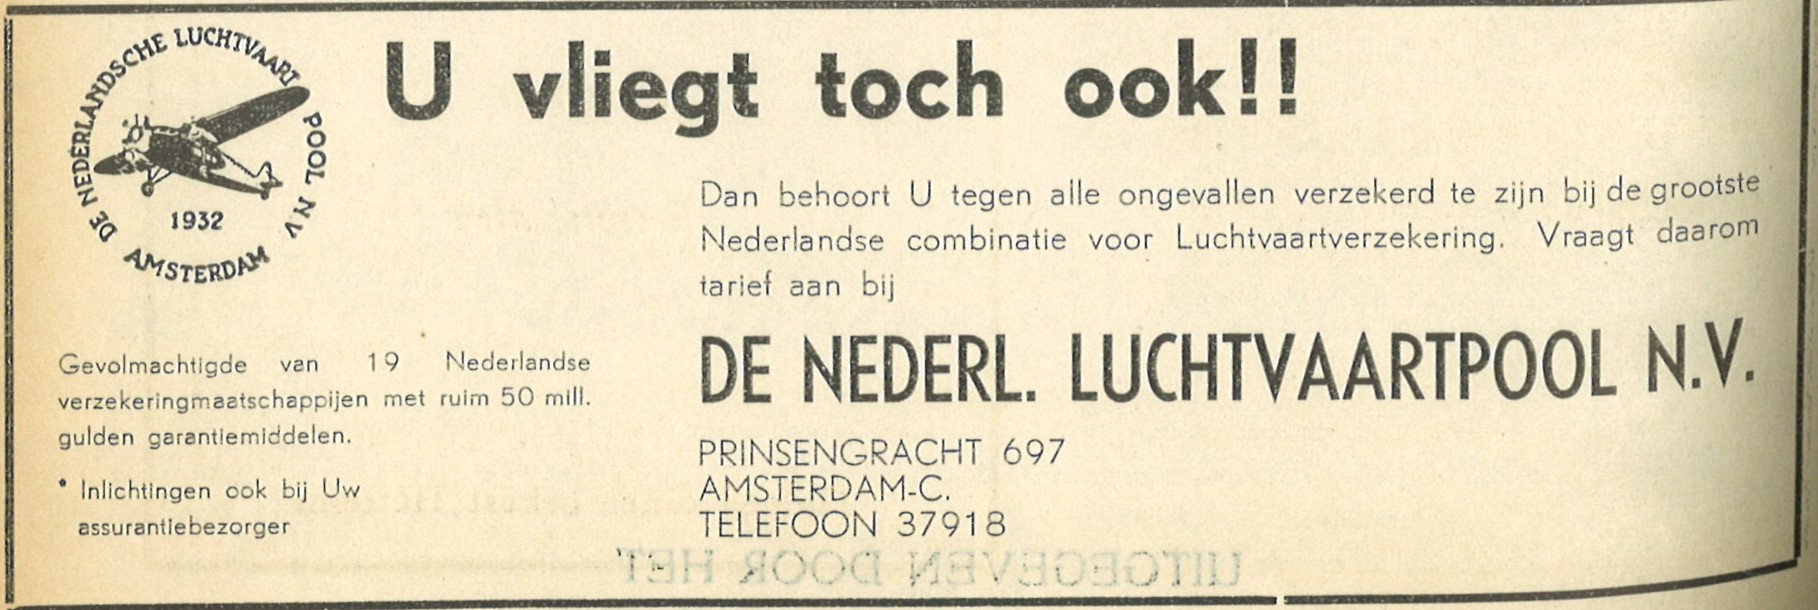 KLM-advertentie in de Spectator 1947.